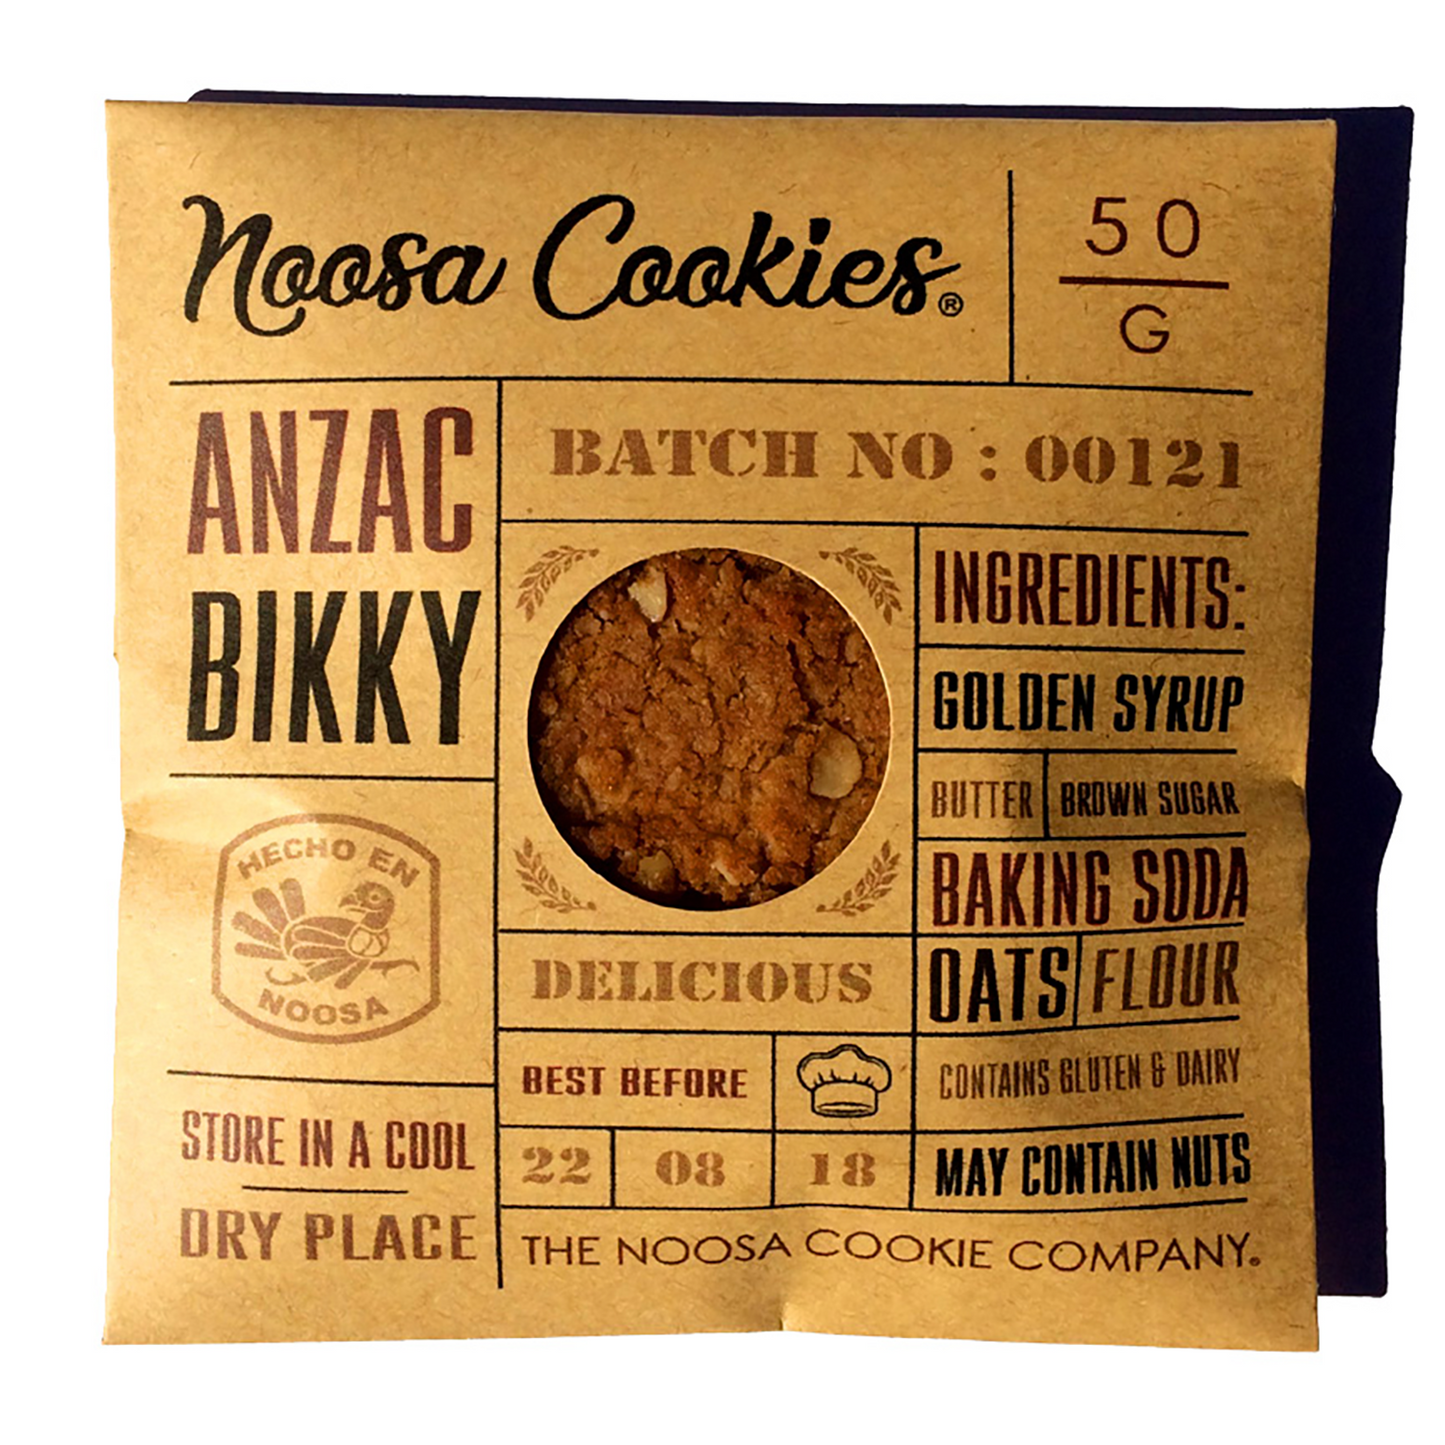 NOOSA COOKIES ® - ANZAC BIKKY / 50g